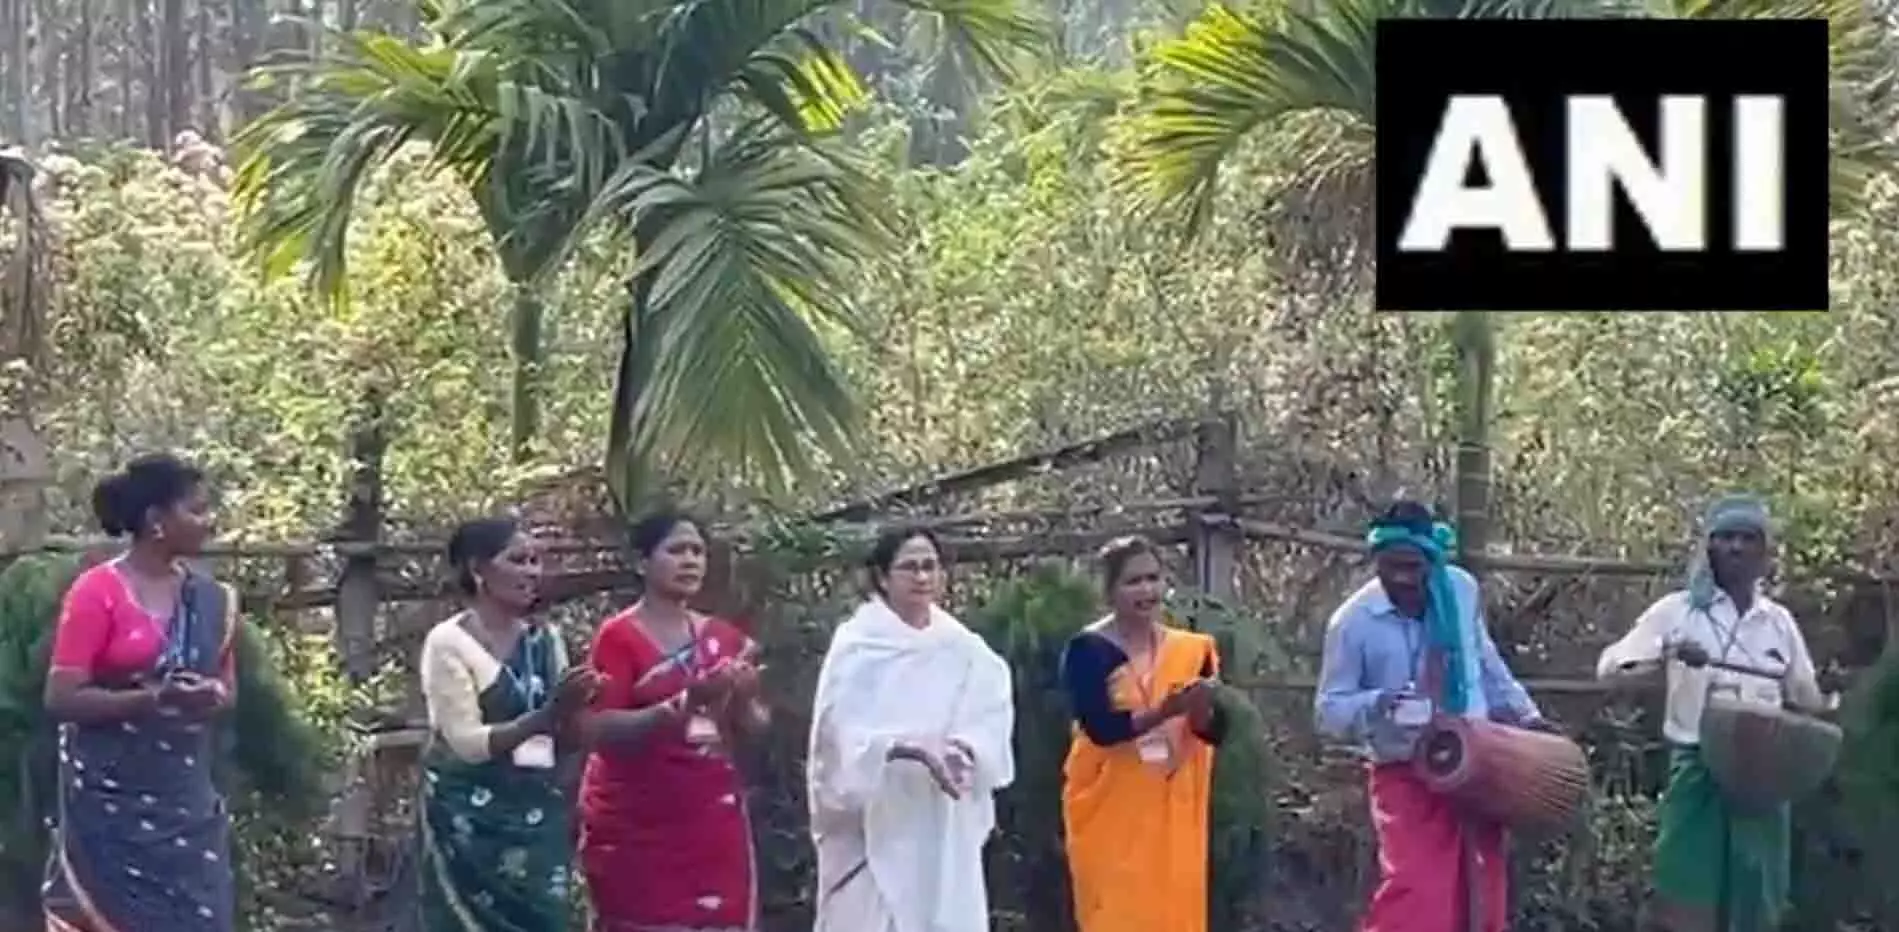 मुख्यमंत्री ममता बनर्जी ने आदिवासी समूह के लोगों संग किया डांस